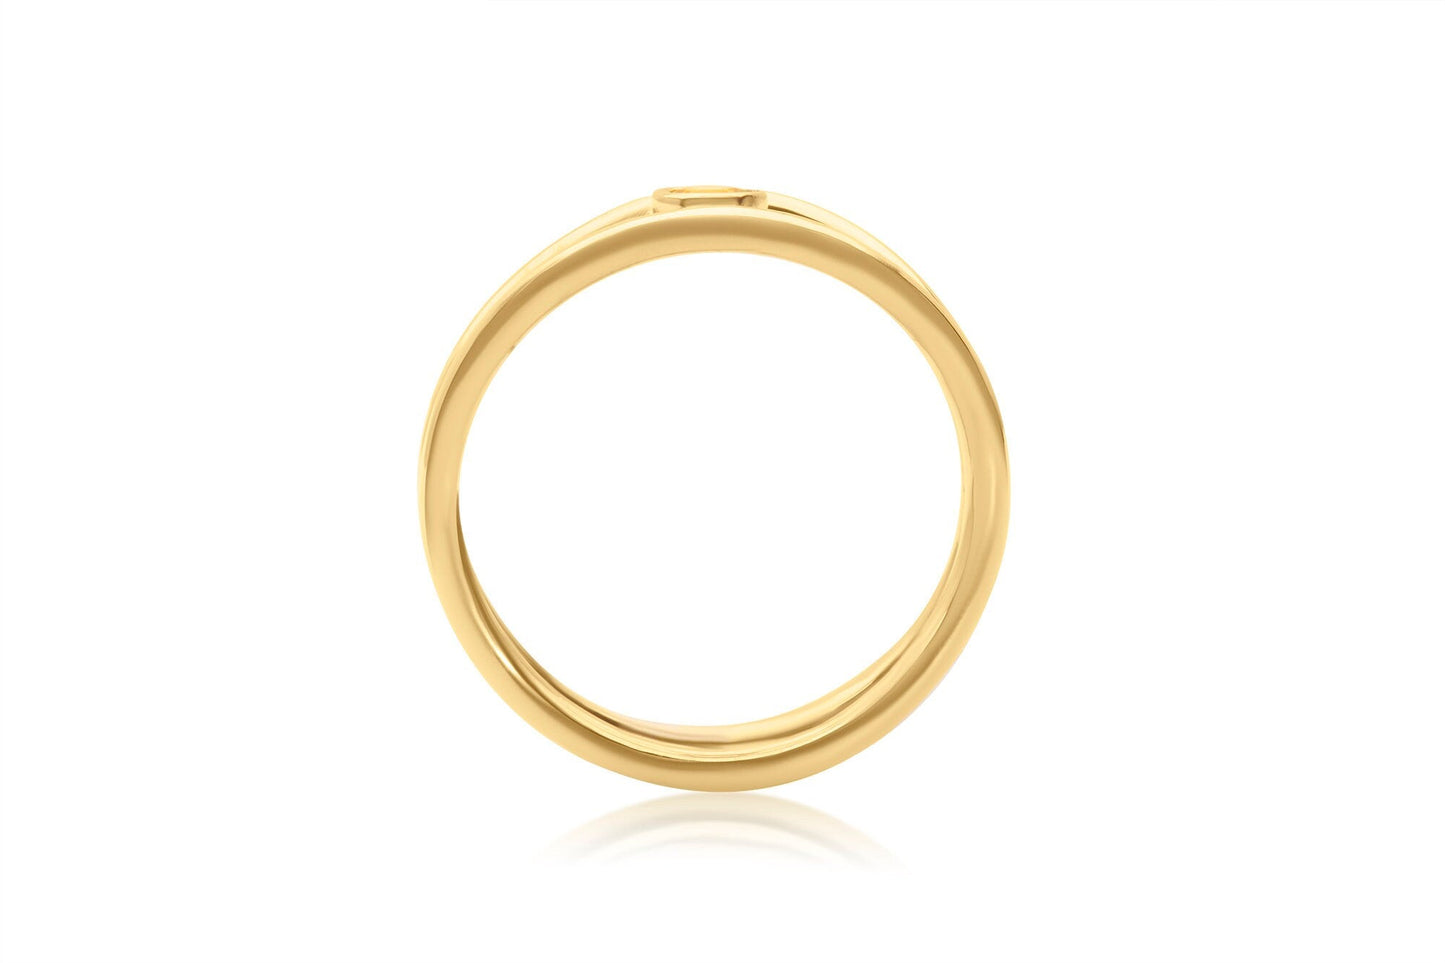 14k Gold Round Citrine Gemstone Wave Ring